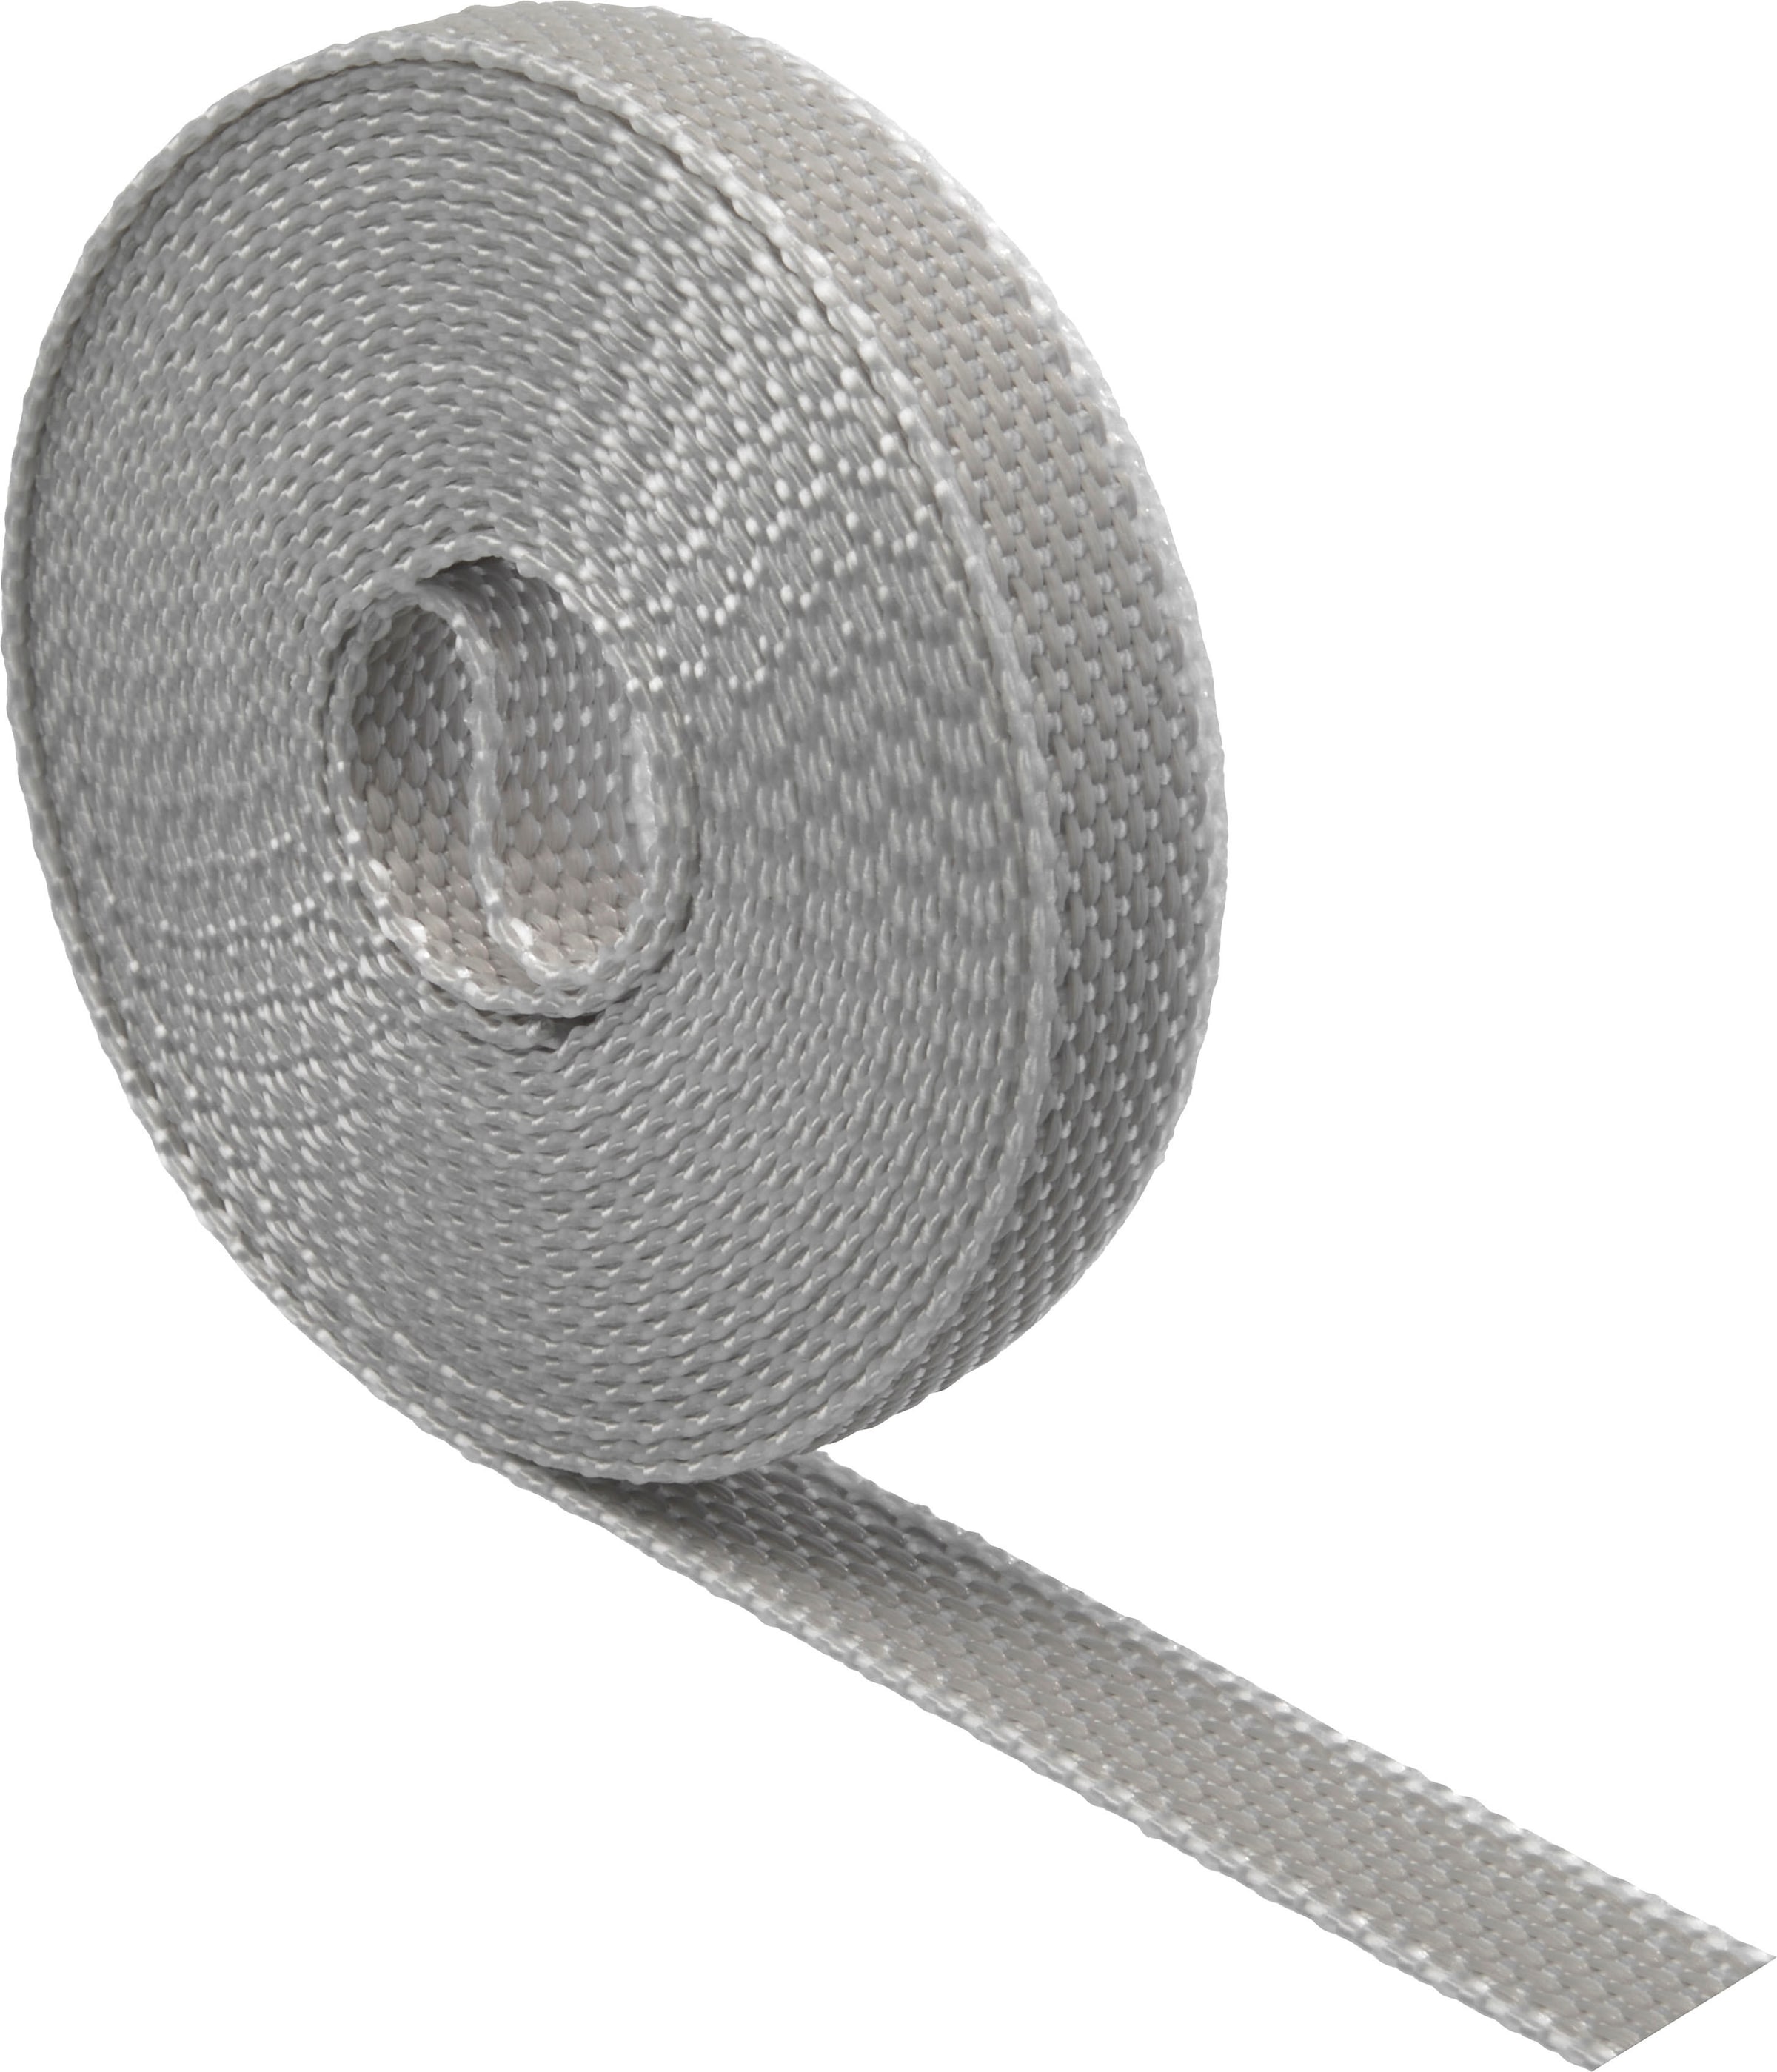 SCHELLENBERG Rollladengurt »Mini«, zur Bedienung eines Rolladens mit  Gurtwickler, 14 mm, 4,5 m Länge | BAUR